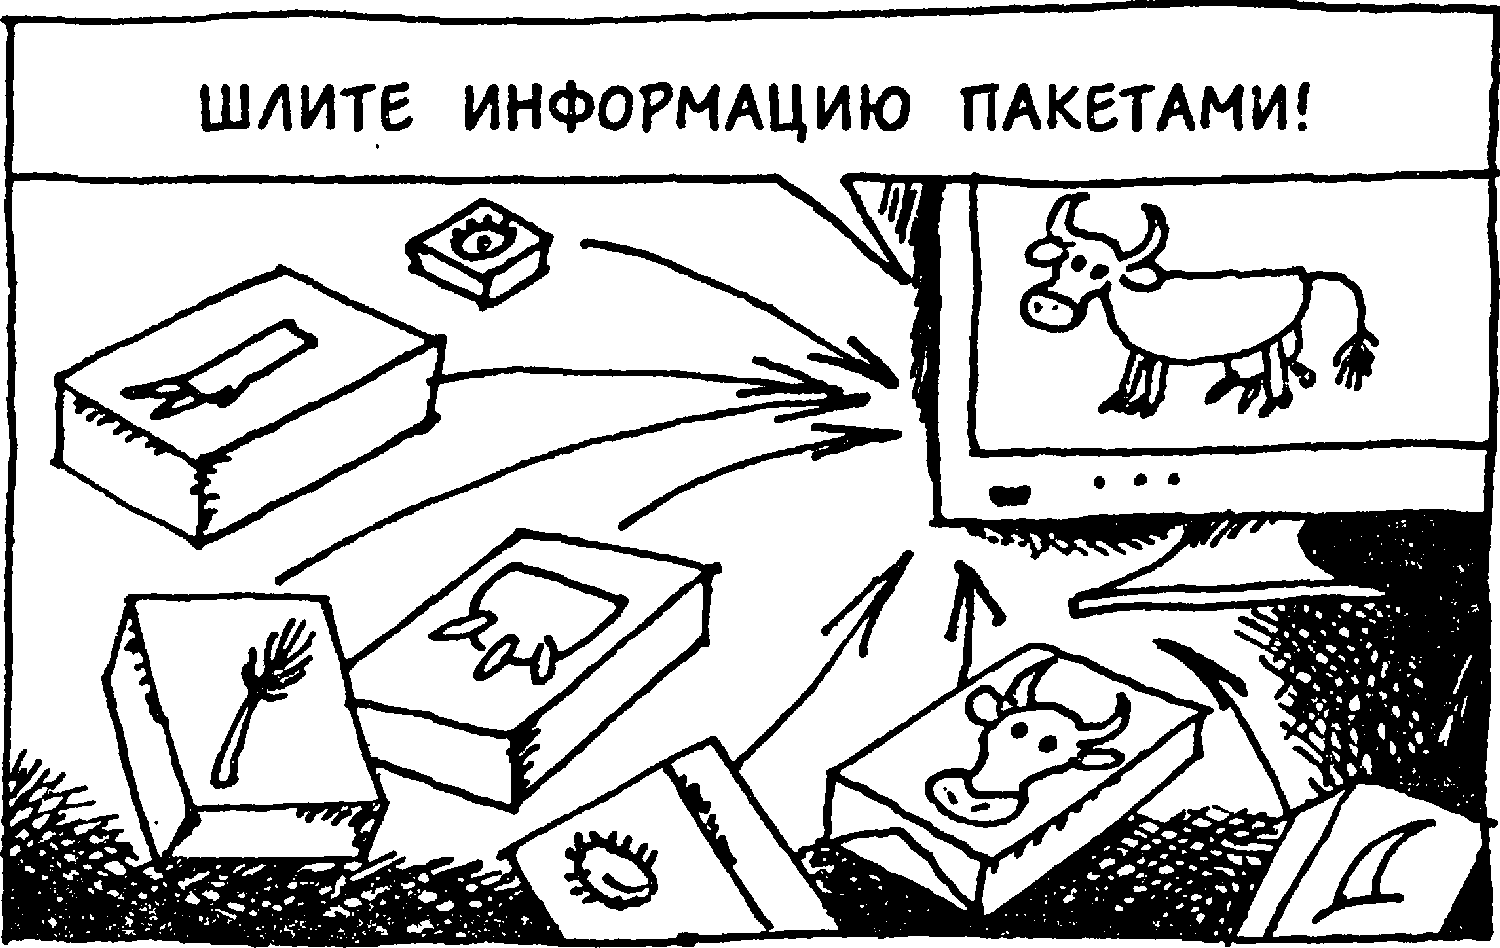 Я познаю мир. Компьютеры и интернет. Станислав Николаевич Зигуненко. Иллюстрация 122